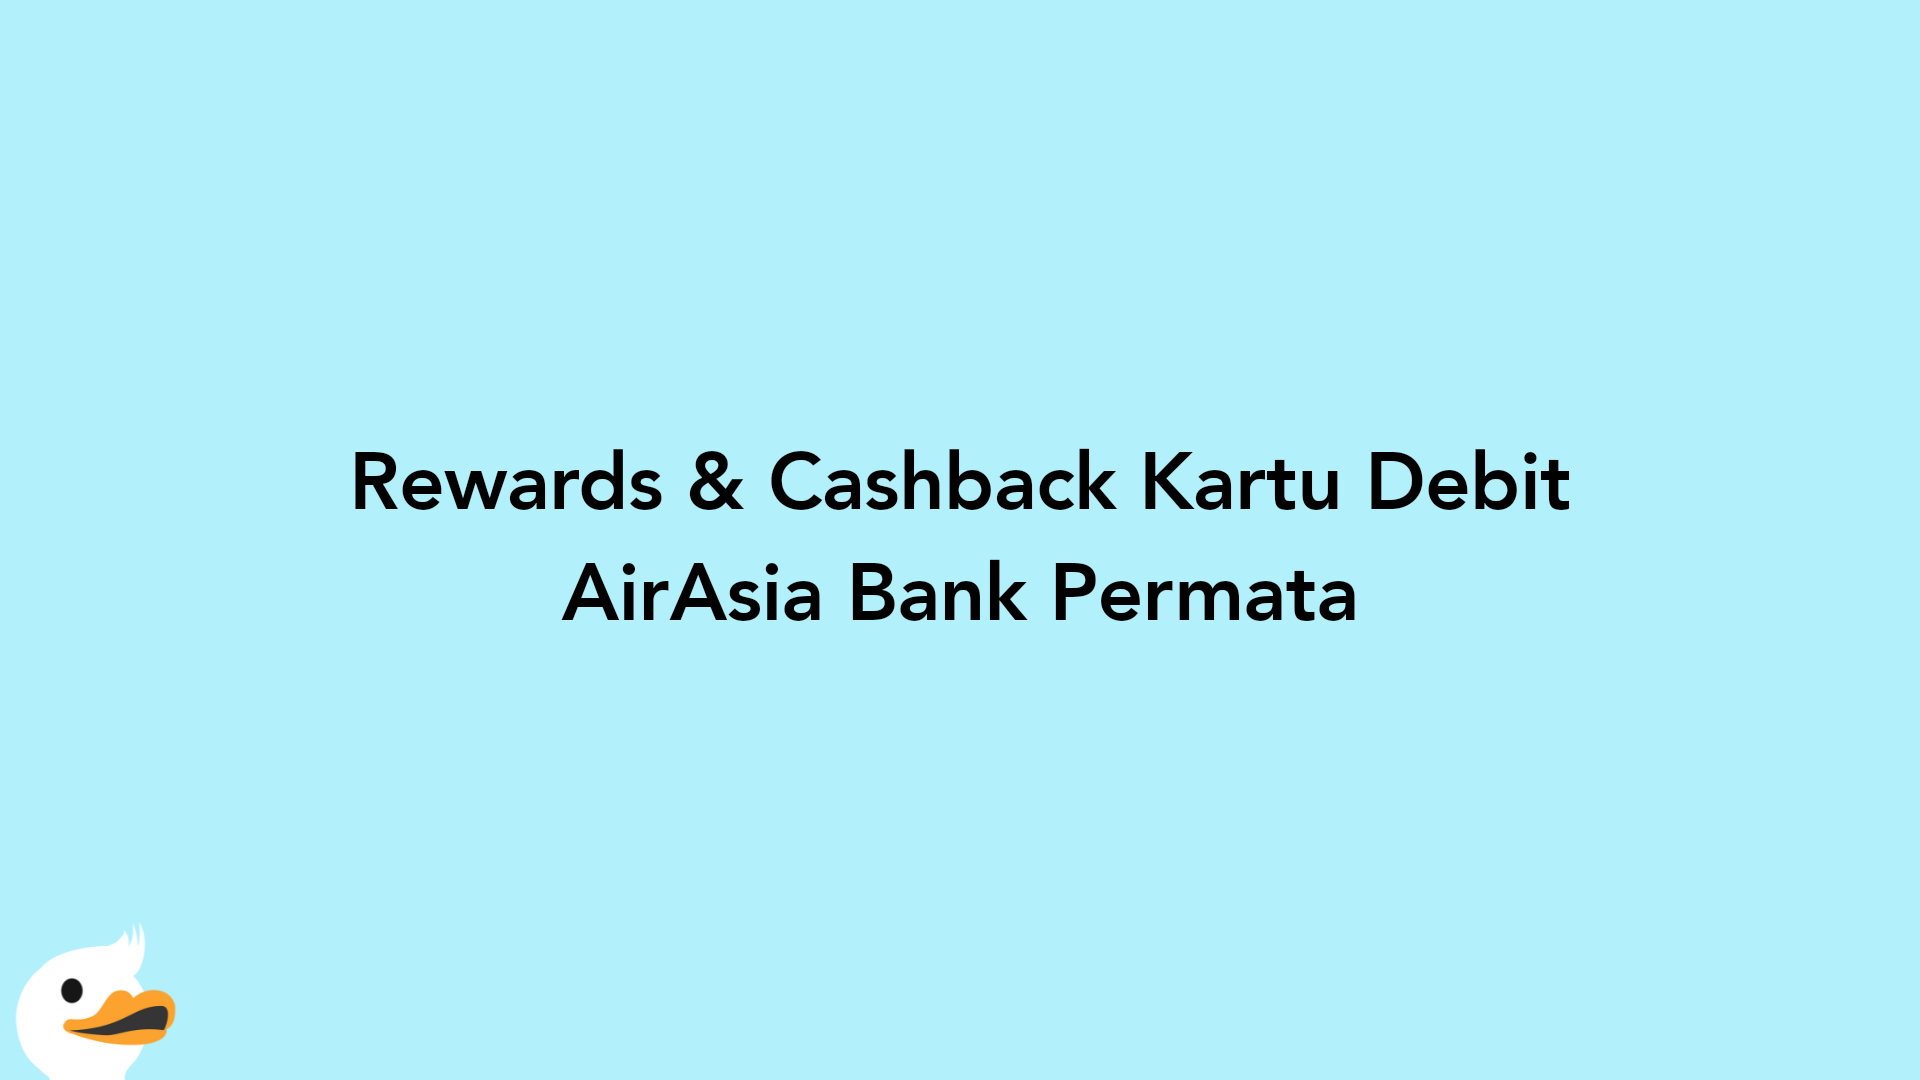 Rewards & Cashback Kartu Debit AirAsia Bank Permata